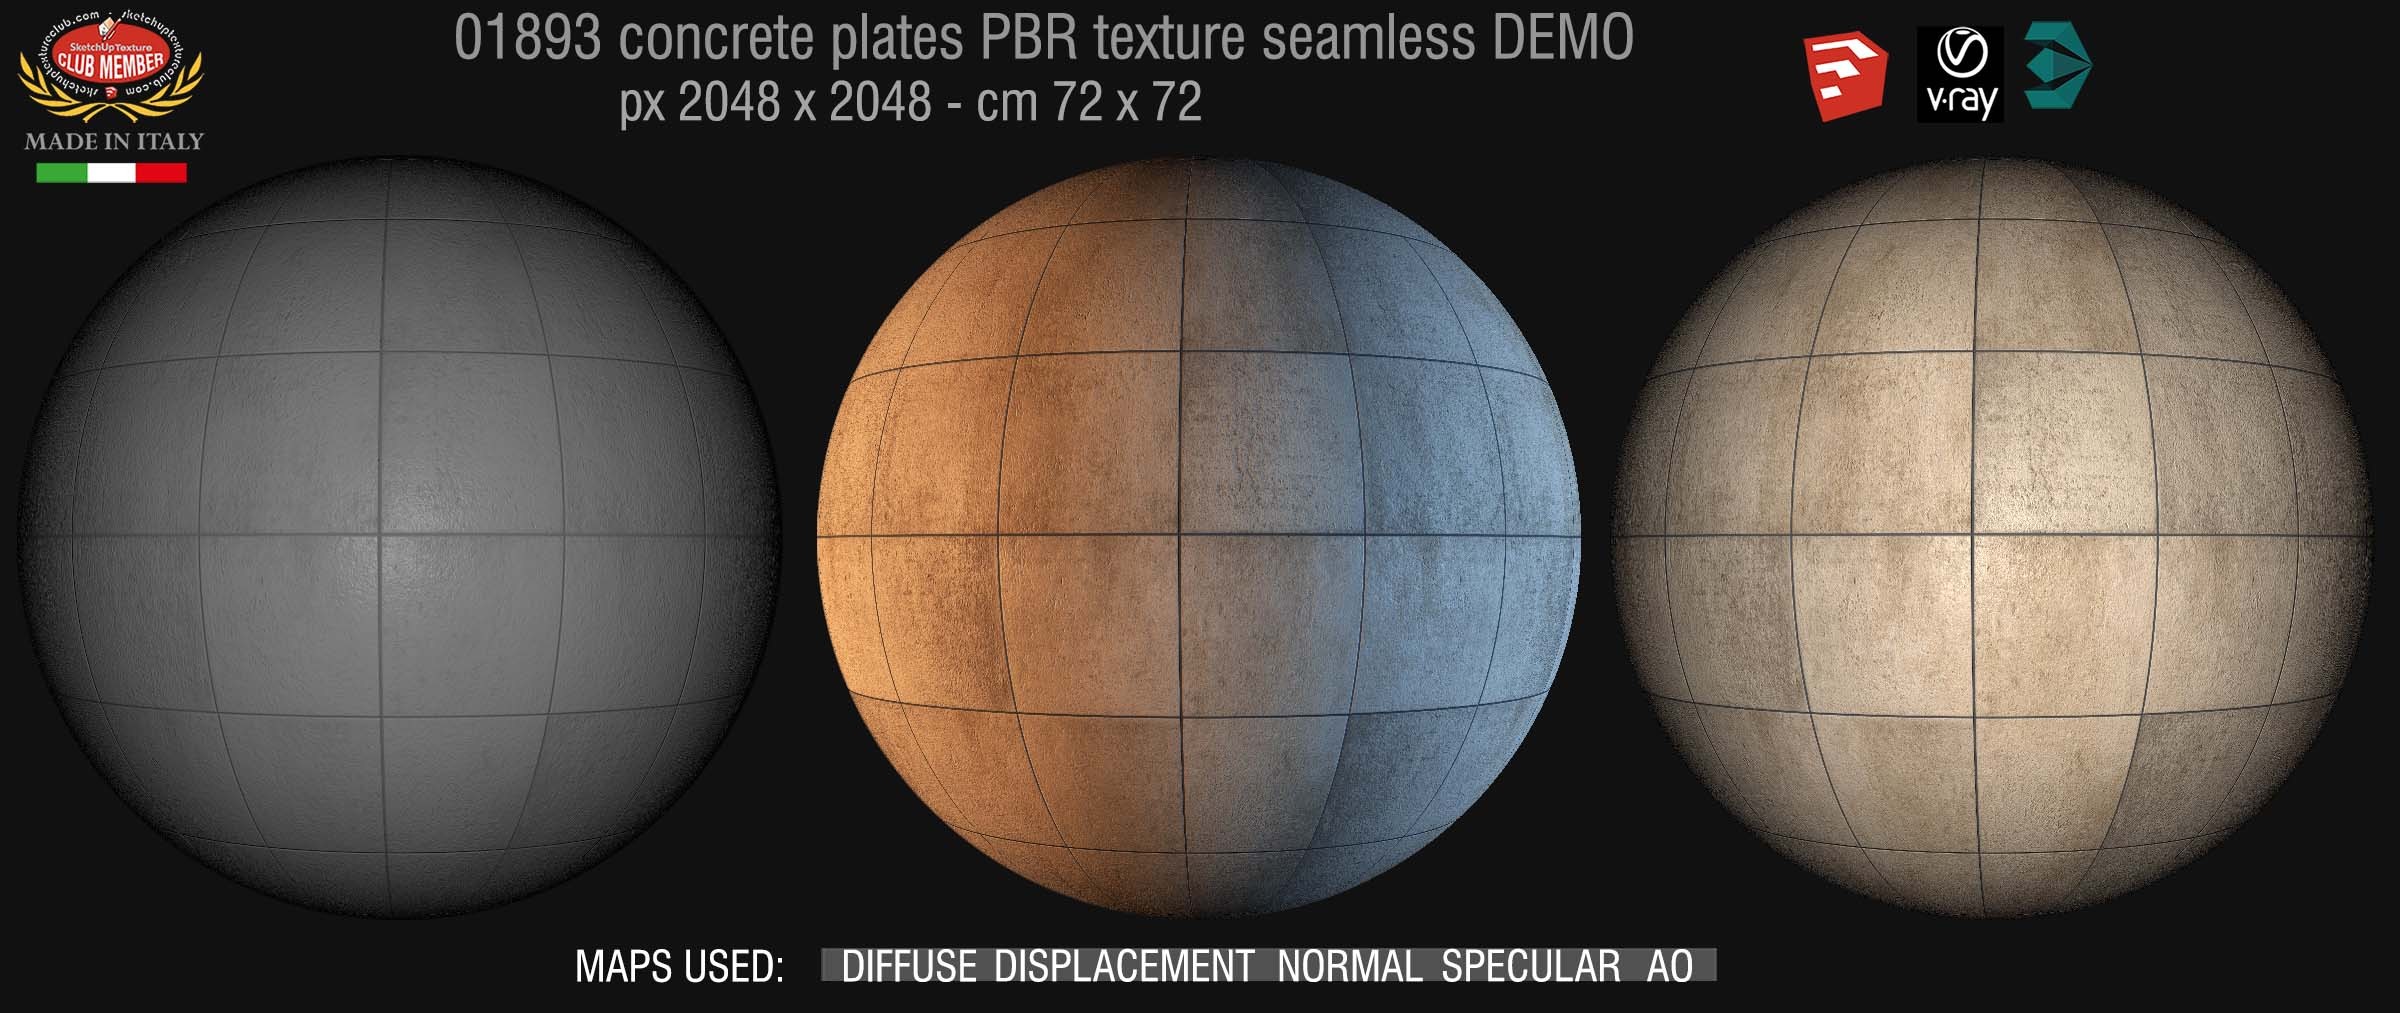 01893 tadao ando concrete plates PBR texture seamless DEMO